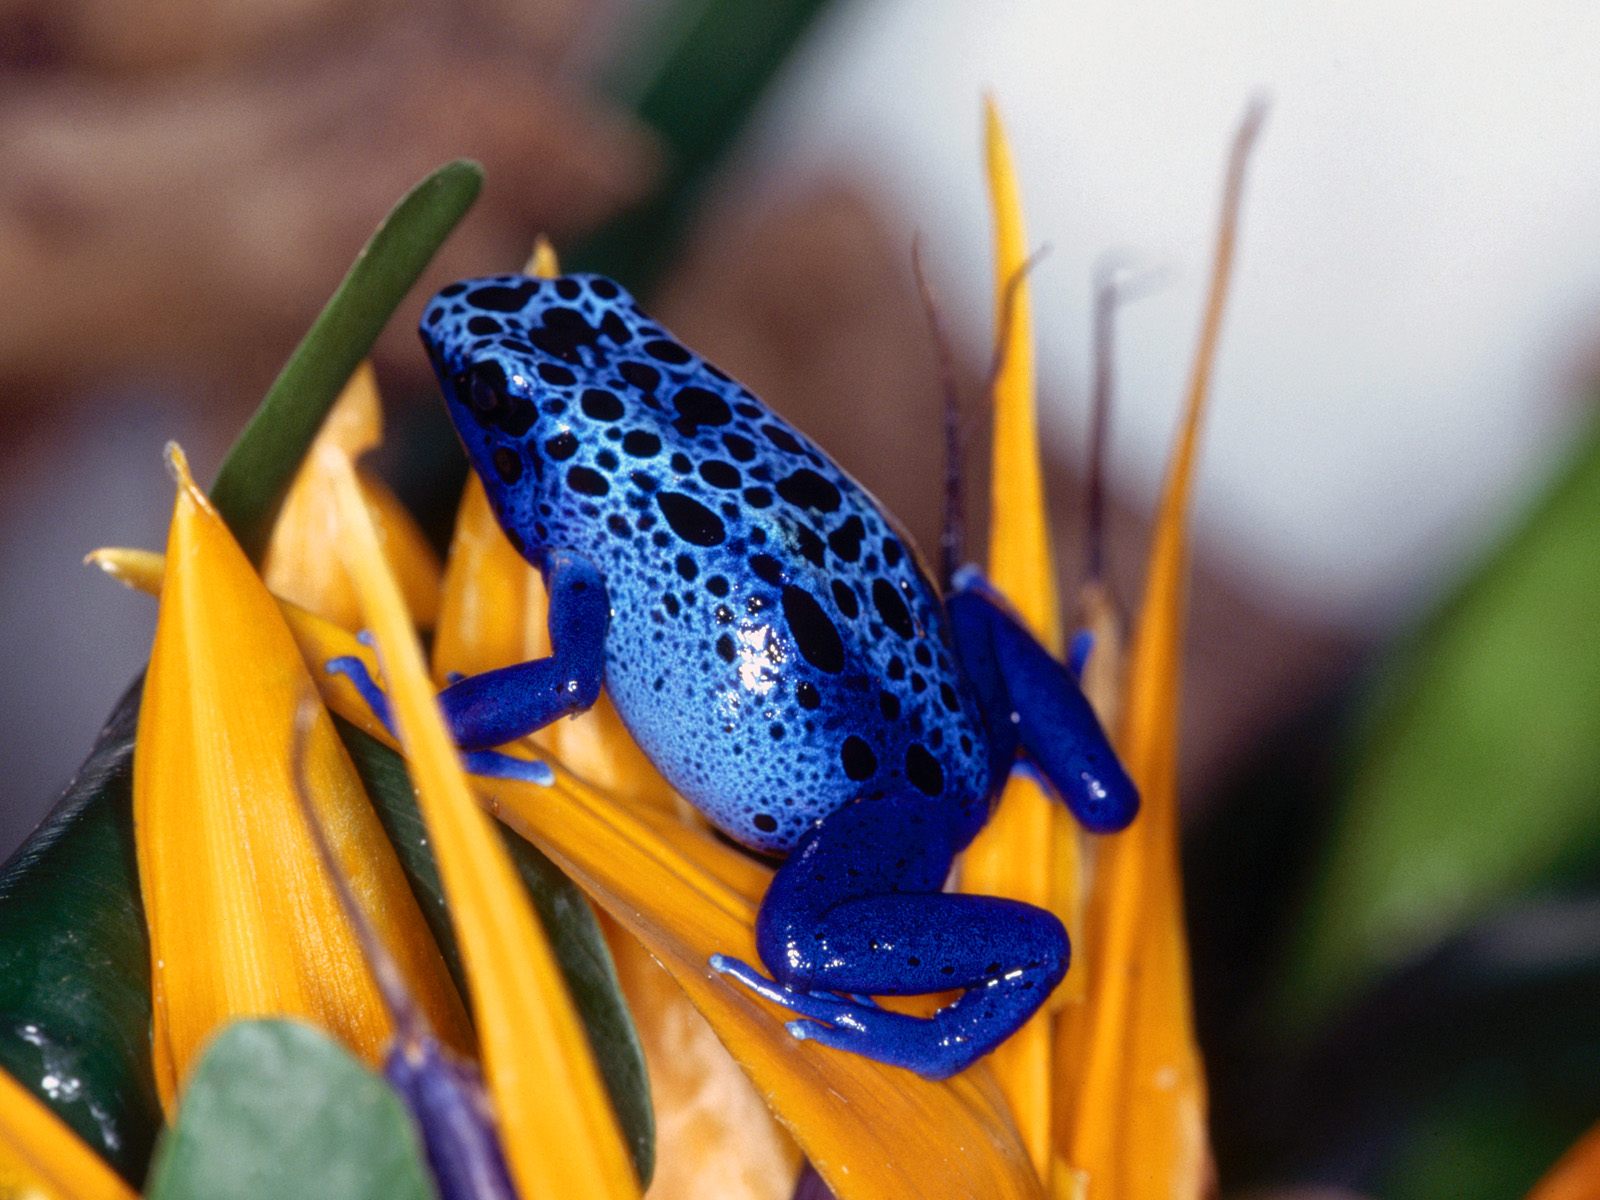  Animals part 1 z 3 - Blue Poison Frog.jpg